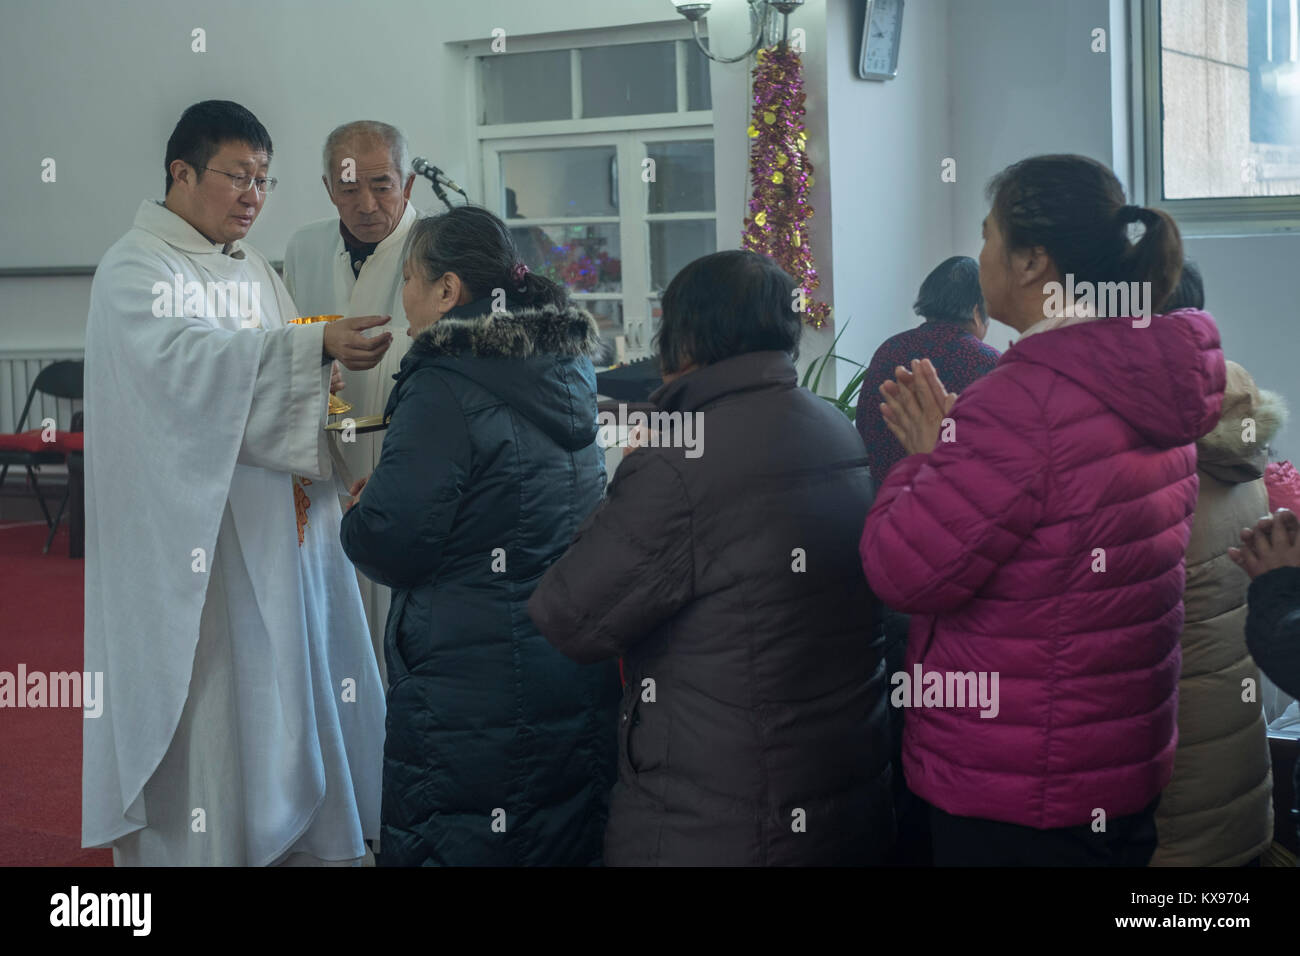 Der Reverend Pang Ruowang, die Gemeinschaft der Gläubigen, während der Christmette am Heiligen Herz Jesu Kirche in Housangyu Dorf, 70 km westlich von Peking, eine der frühesten Kirchen in China. 25-Dez-2017 Stockfoto